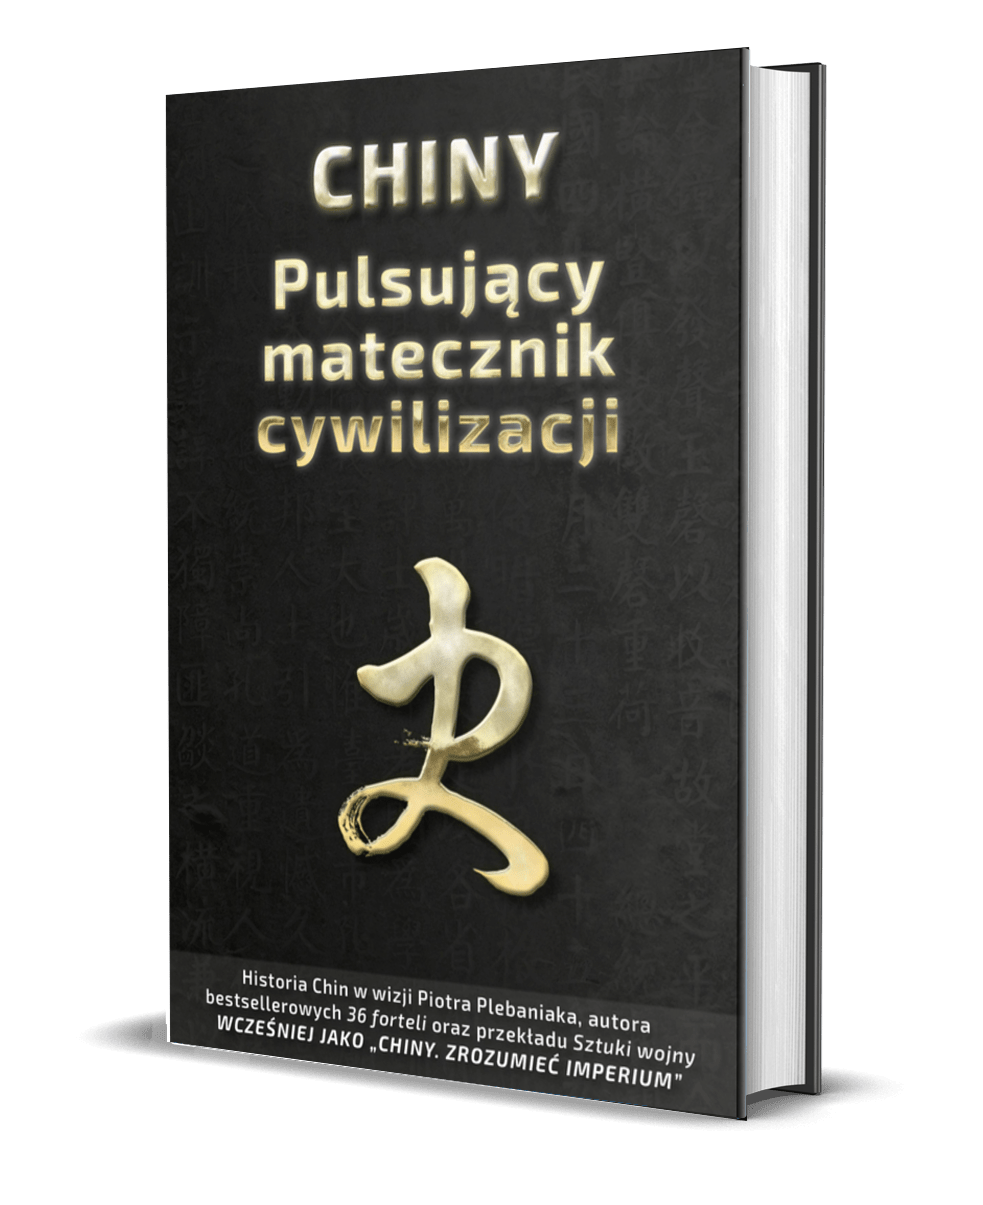 Zbiór 81 maksym i przysłów, z pomocą których zrozumiesz esencję chińskiej historii: poznasz czyny i uczucia ludzi, których losy i czyny są tworzywem chińskiej państwowości i aspiracji imperialnych. | Próbka książki 